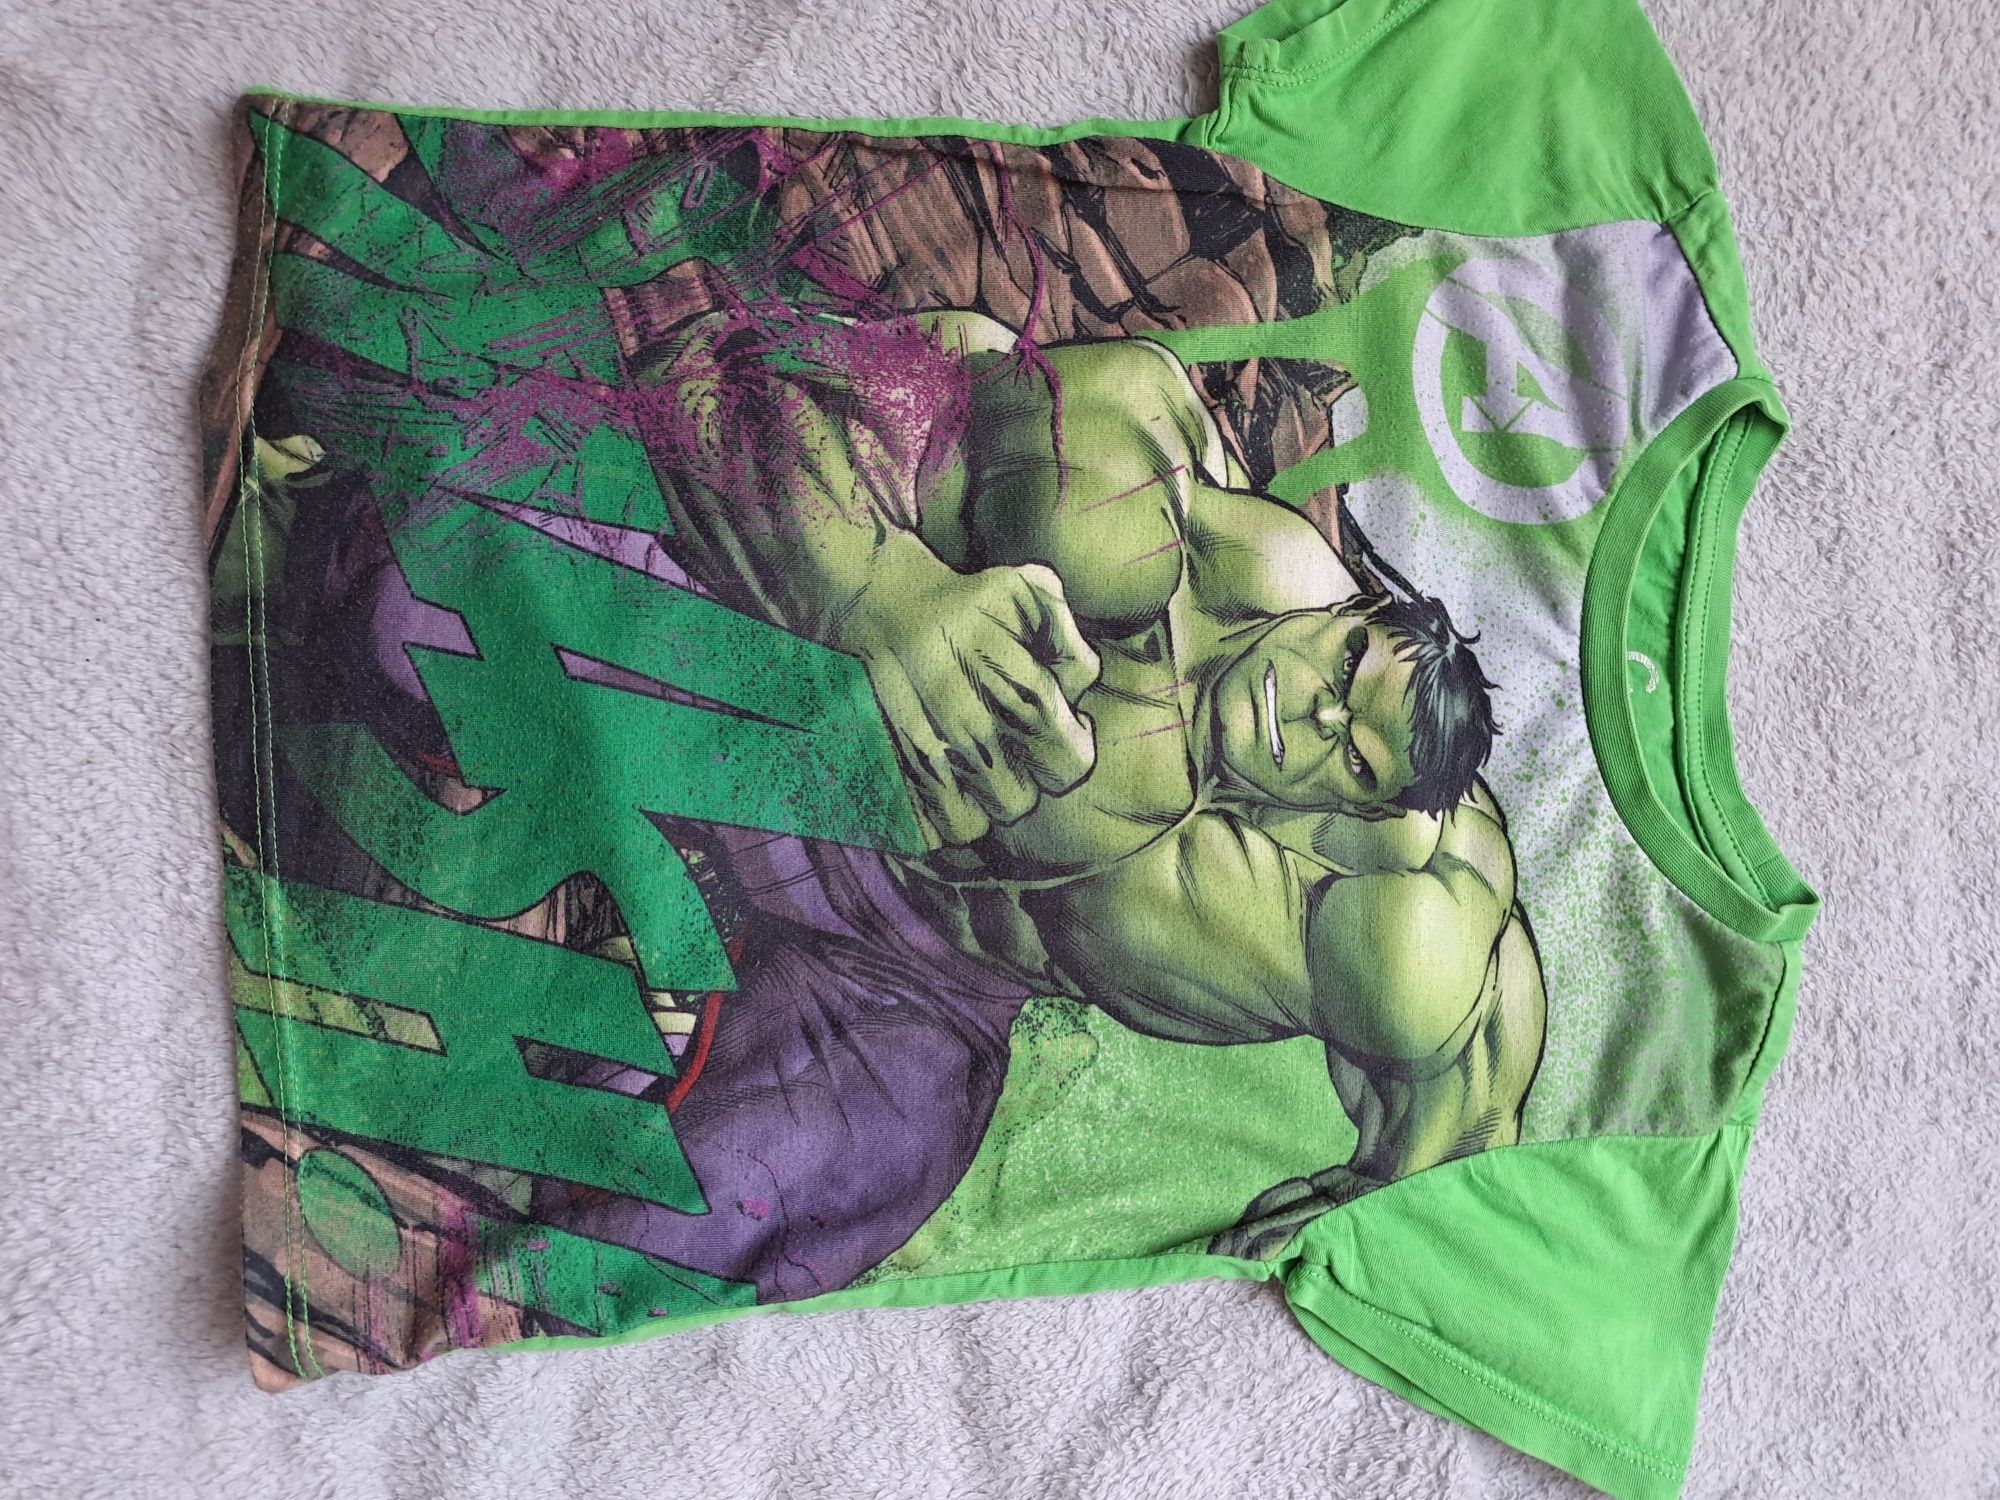 Zestaw ubranek dla fana Hulka 4 latka